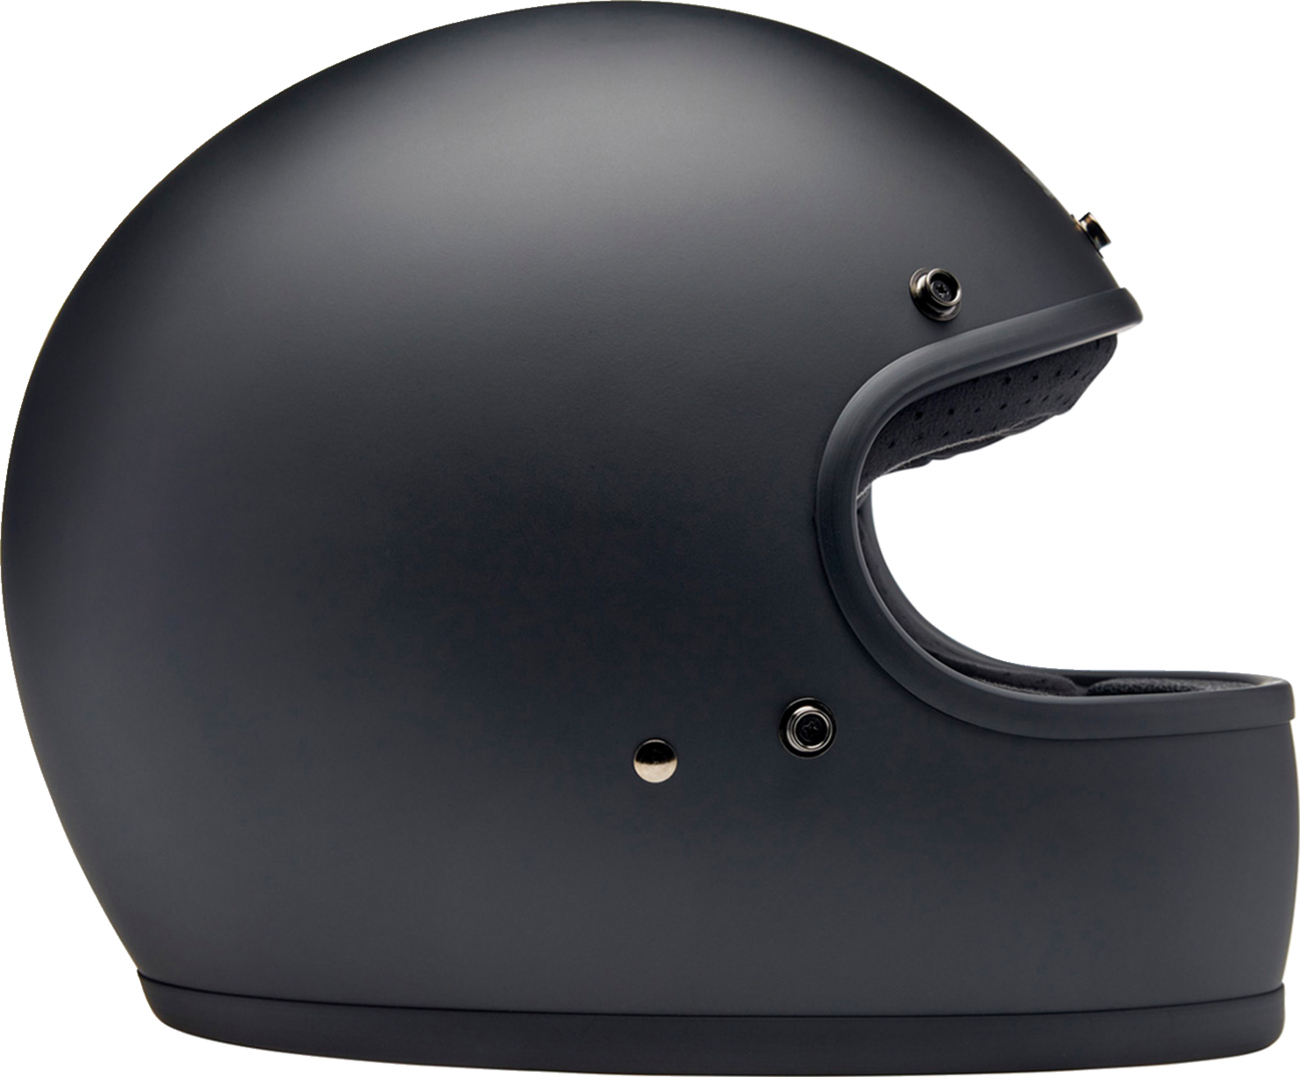 BILTWELL Gringo Helmet - Flat Black - XS 1002-201-501